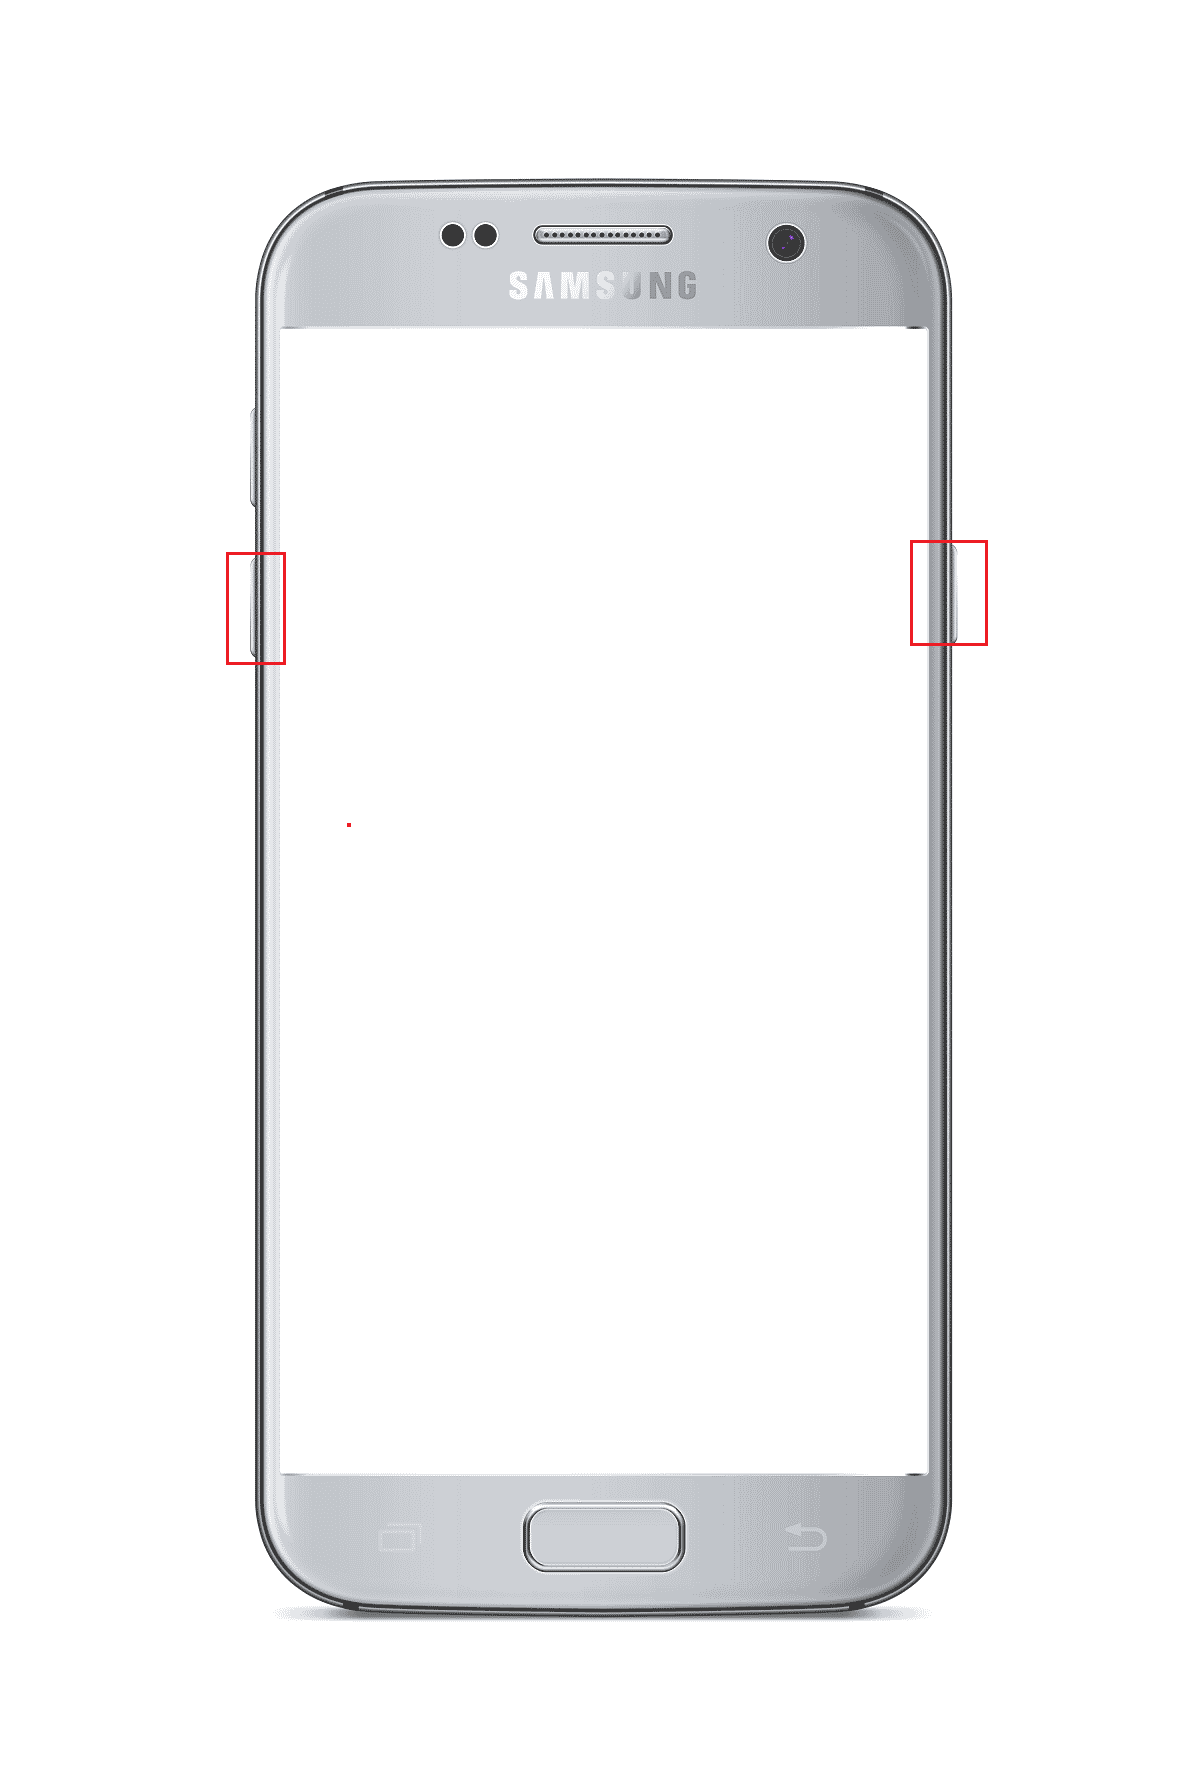 กดปุ่มลดระดับเสียงและปุ่มเปิดปิดในโทรศัพท์ซัมซุง Android